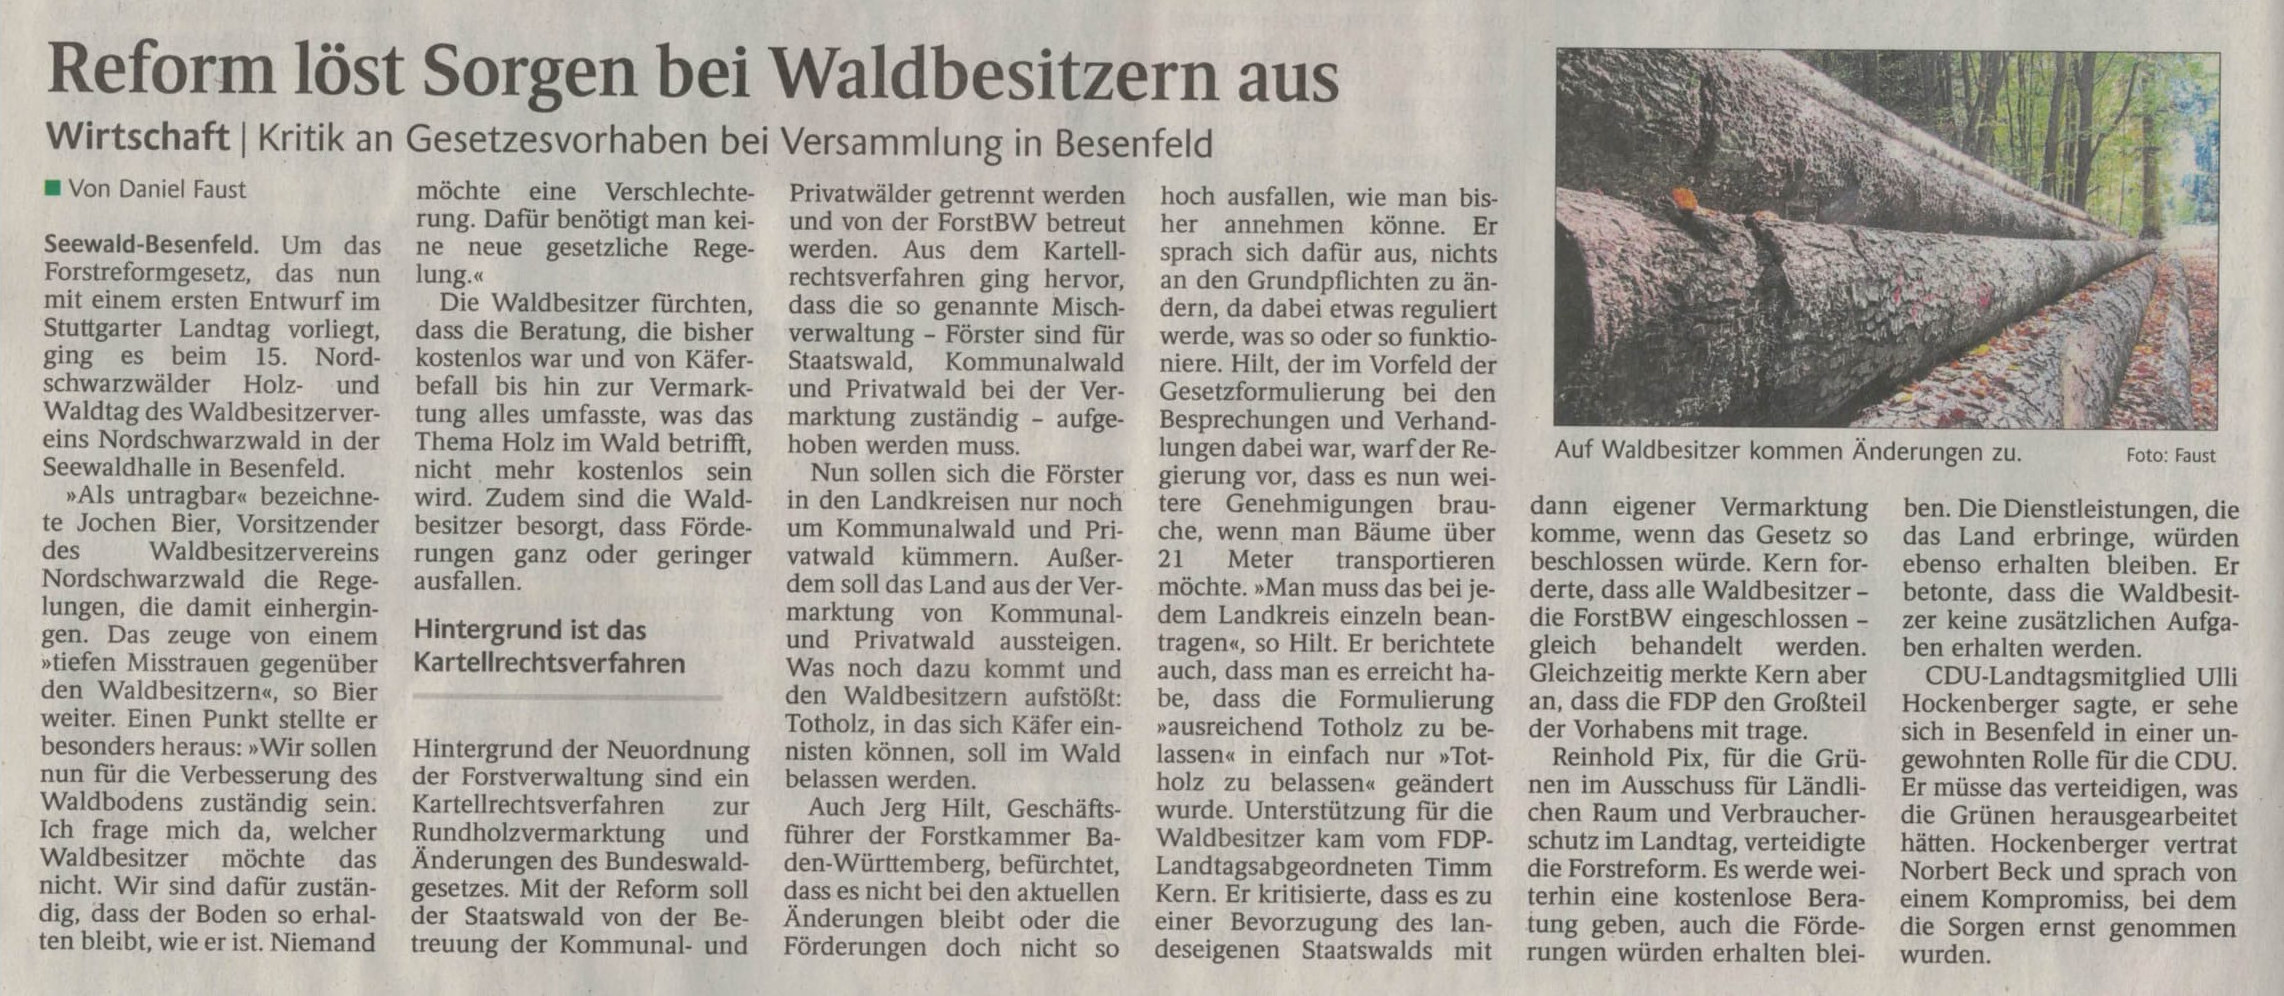 Zeitungsartikel 15. Nordschwarzwälder Holz- und Waldtag 2019